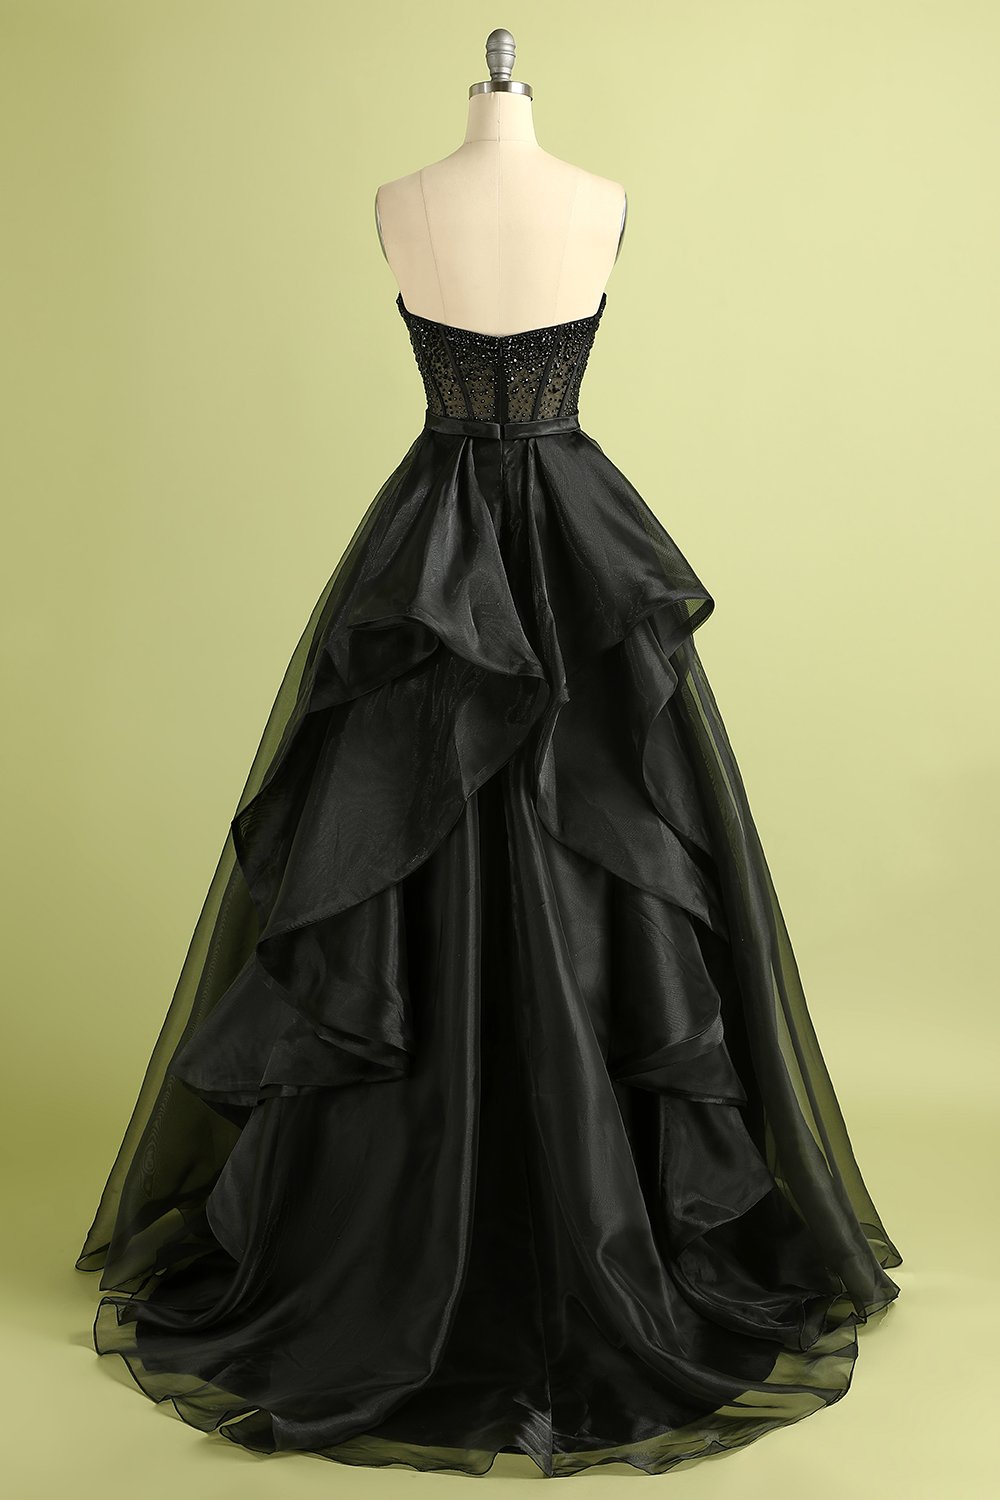 Black Strapless Ball Gown Evening Dress